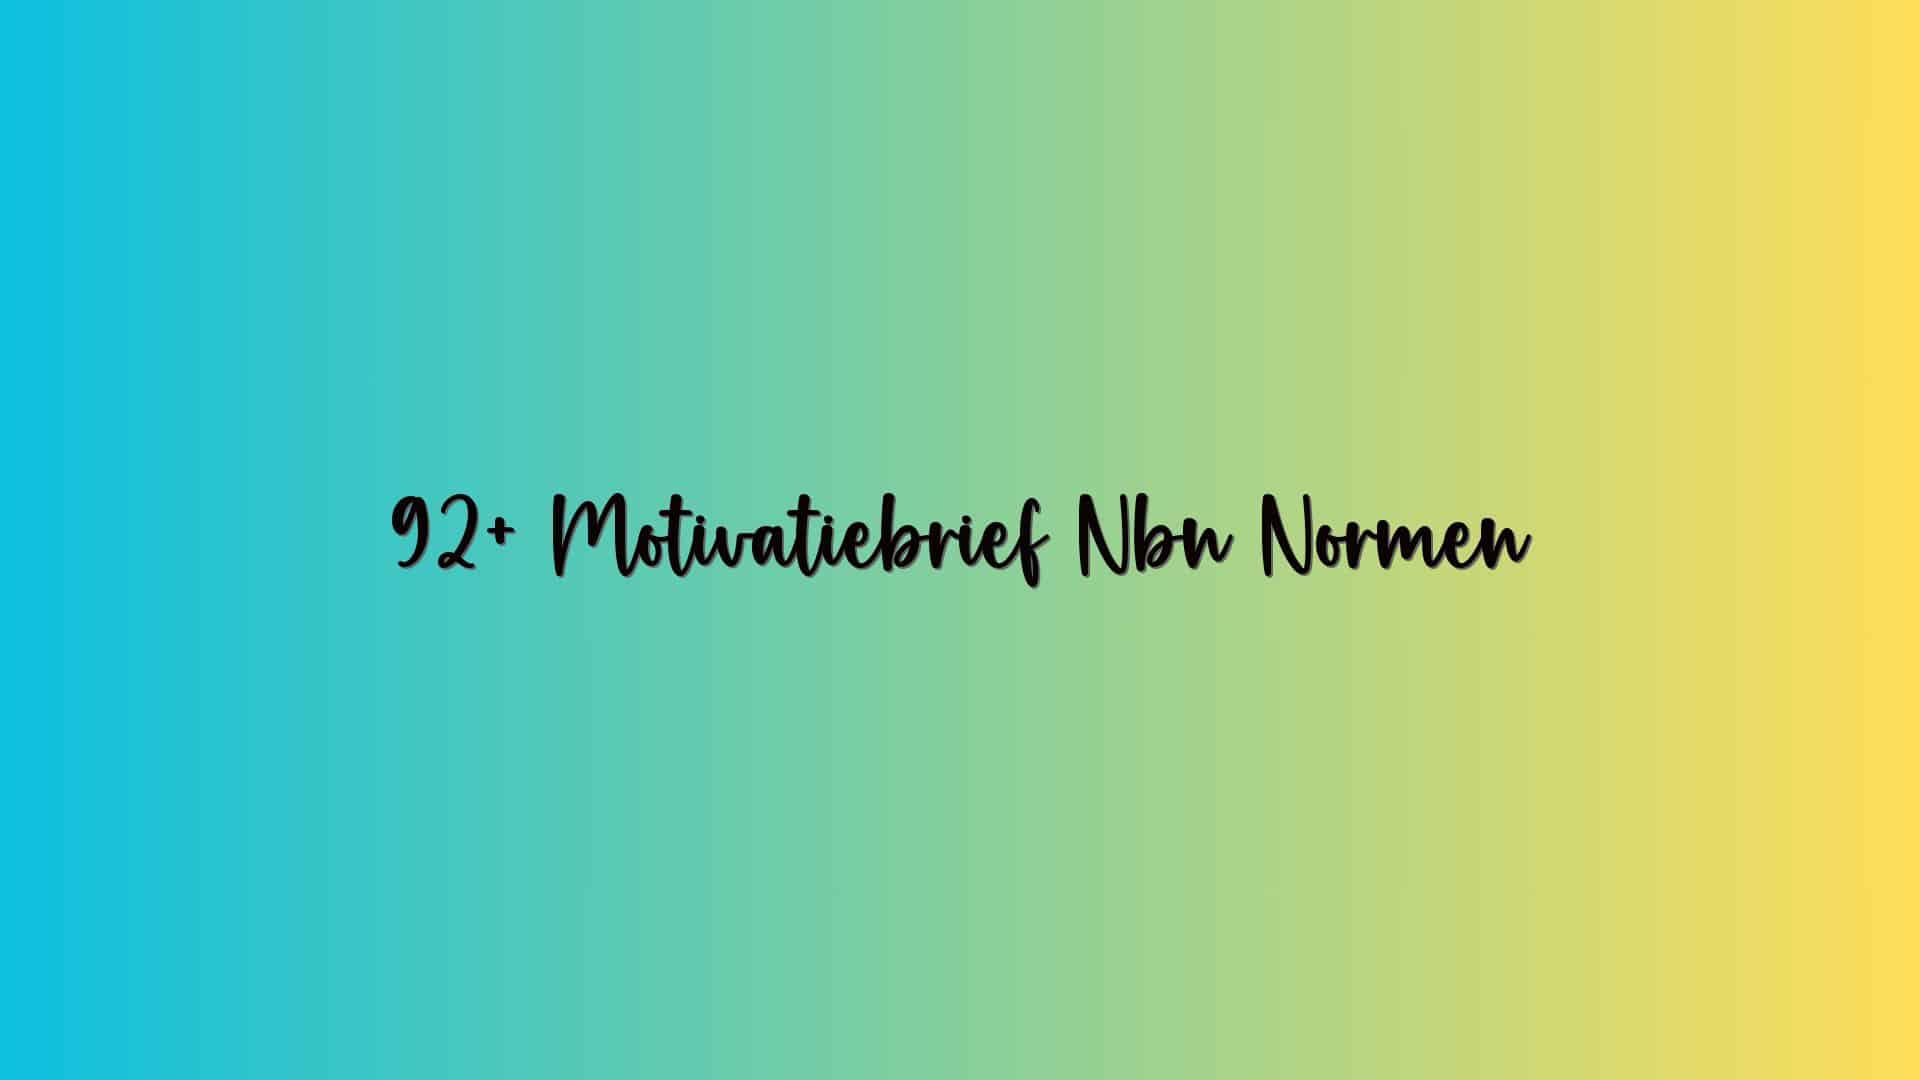 92+ Motivatiebrief Nbn Normen